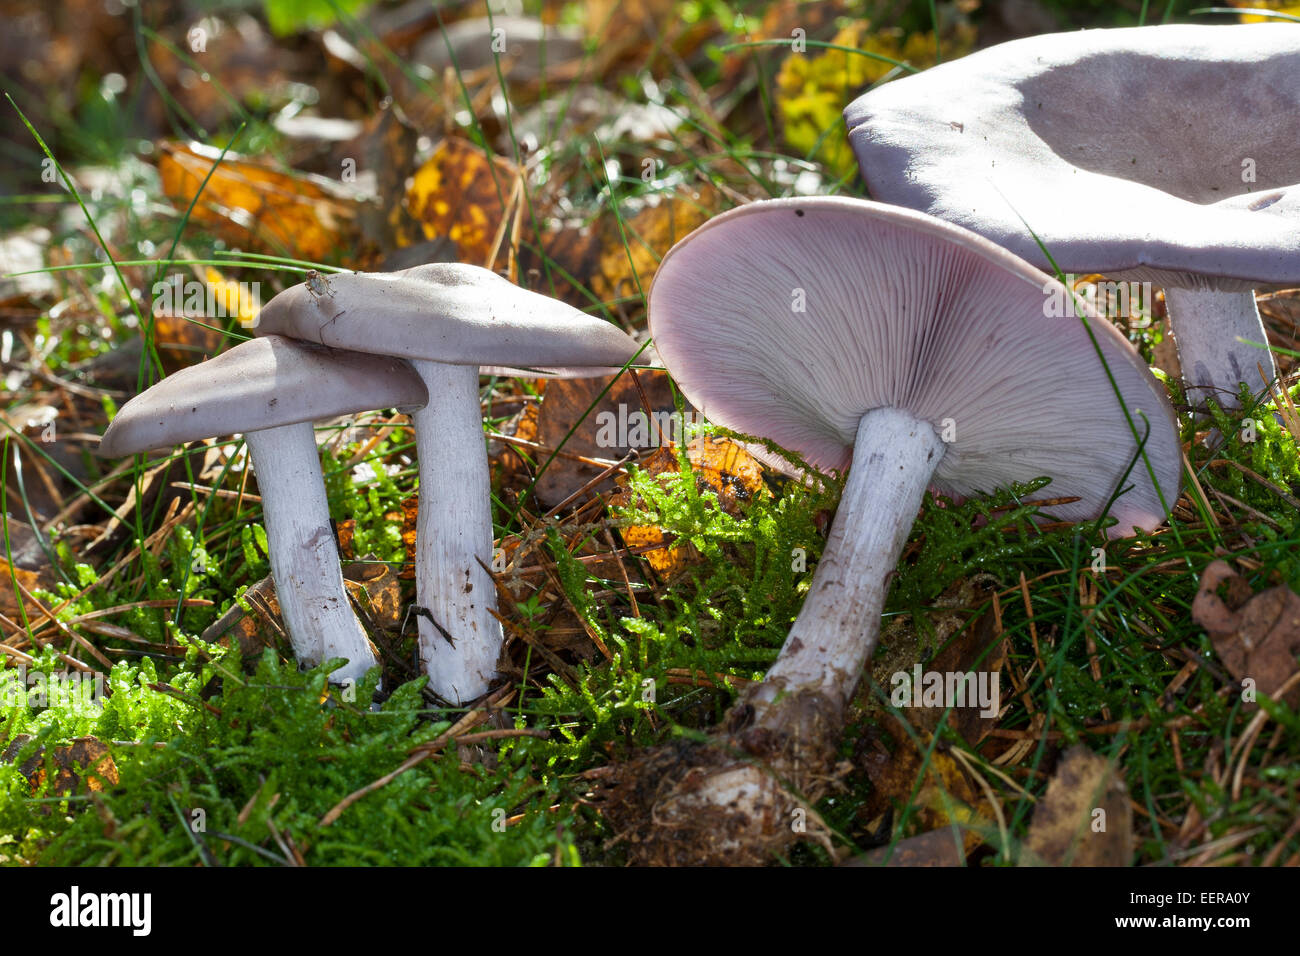 Wood Blewit mushroom, blue stalk mushroom, Violetter Rötelritterling, Lepista nuda, Clitocybe nuda, Tricholoma nudum Stock Photo